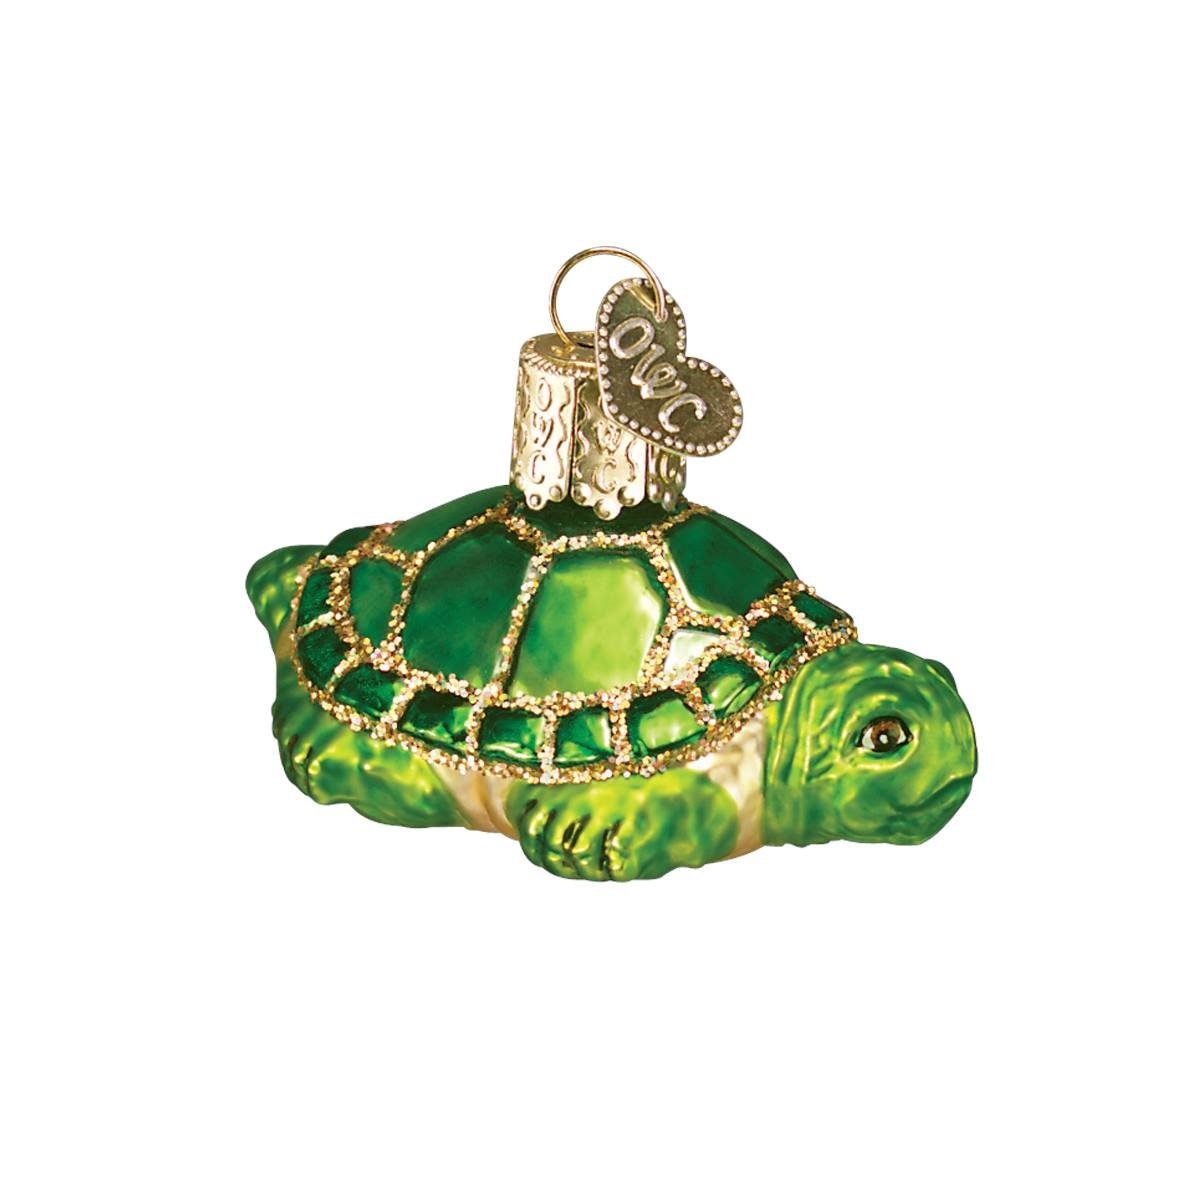 Small Turtle Ornament